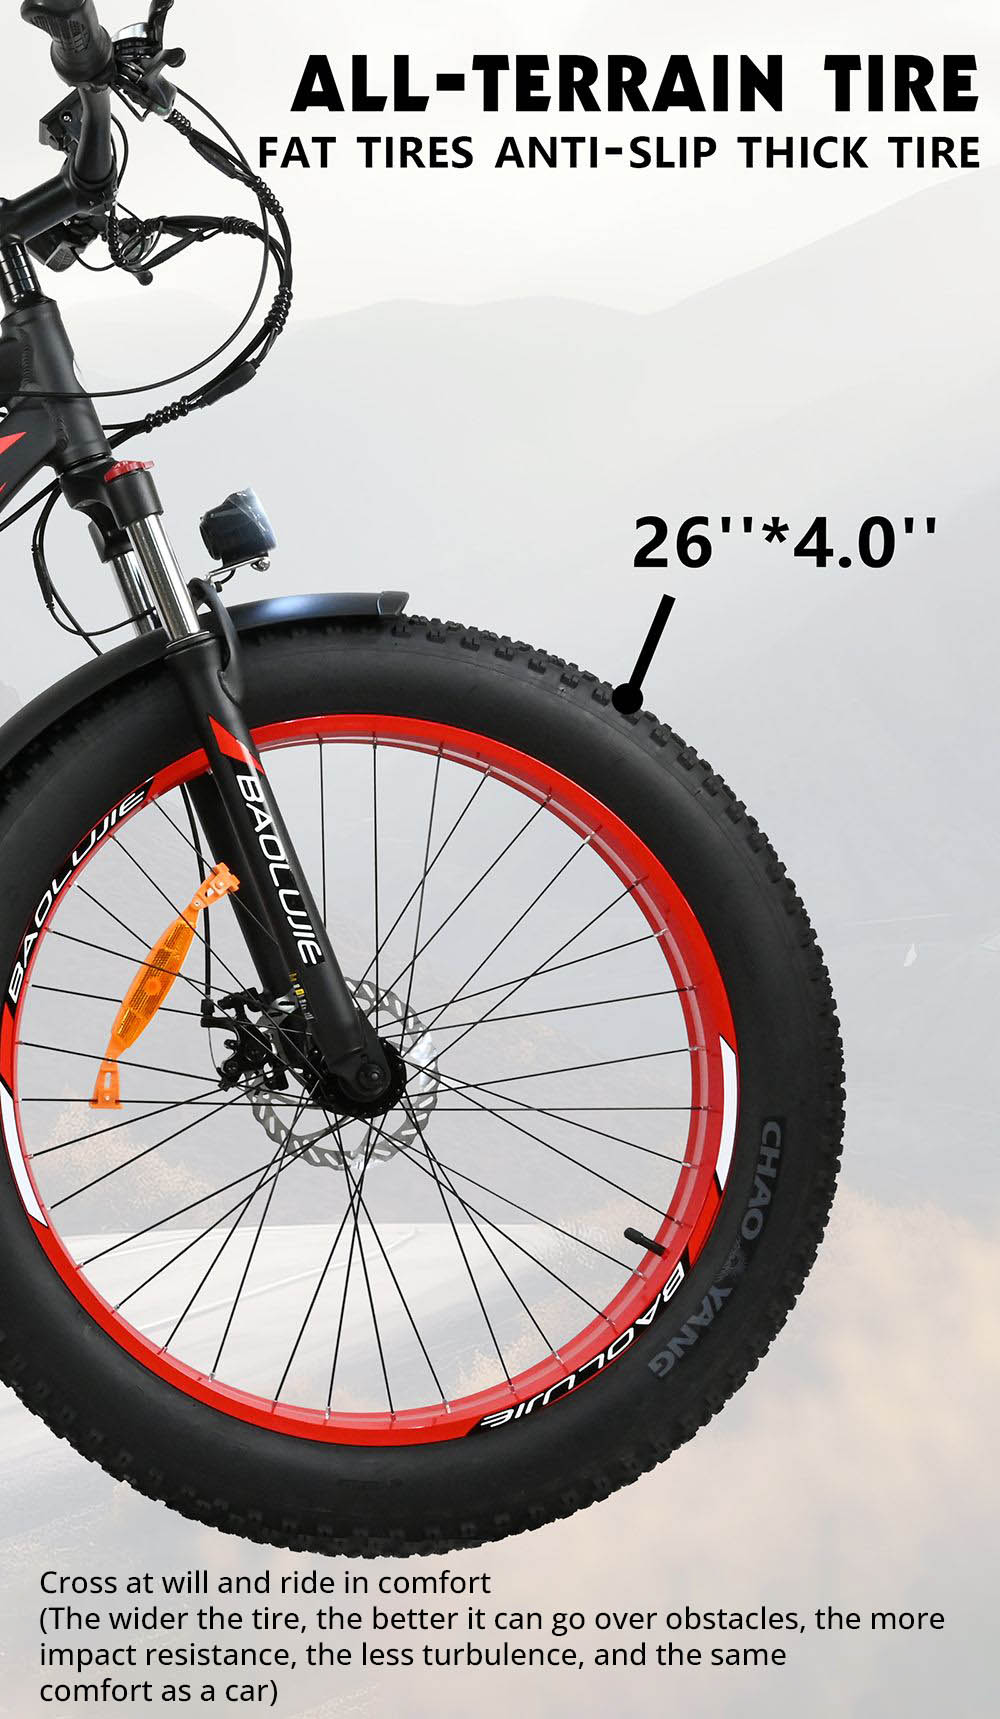 BAOLUJIE DP2619 elektrische fiets, 26 * 4.0 inch dikke band 750 W motor 48 V 13 Ah batterij 45 km / u maximale snelheid 45 km maximaal bereik SHIMANO LCD-scherm met 7 versnellingen - grijs